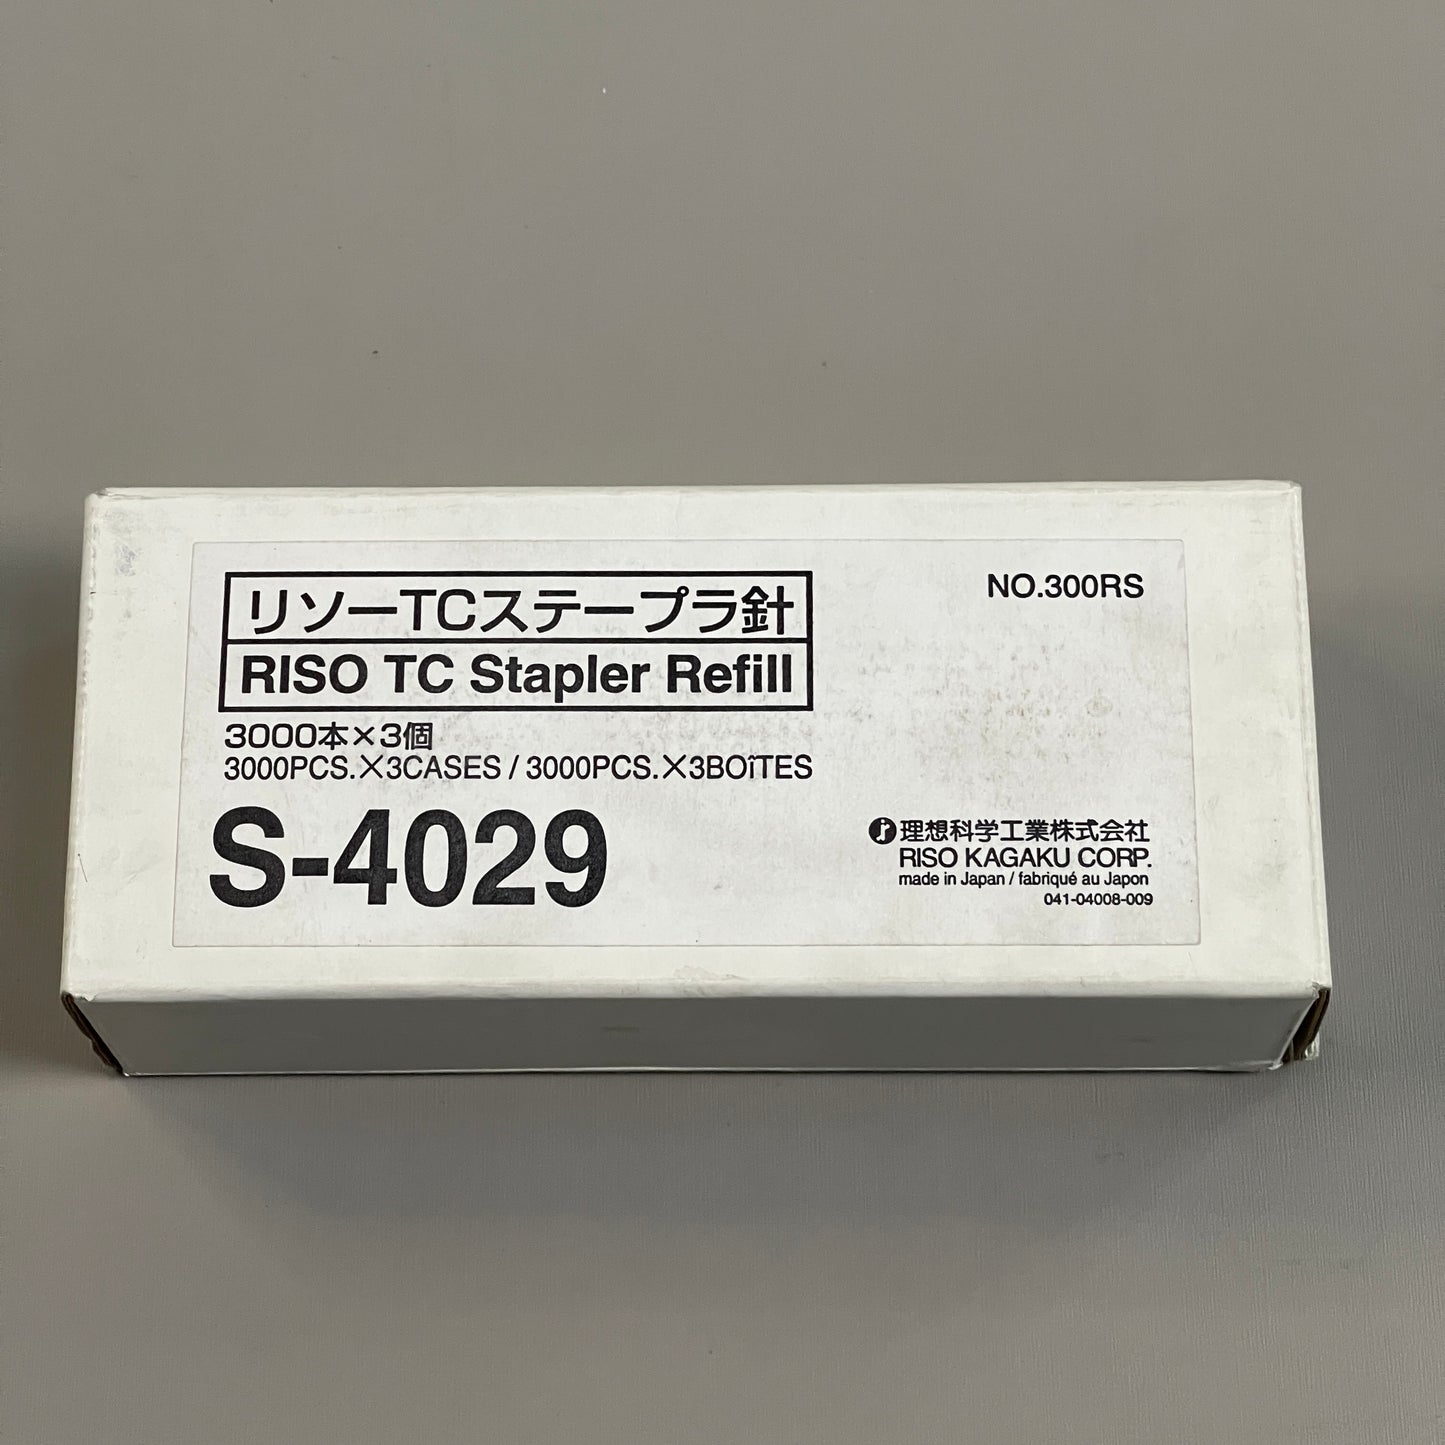 RISO TC Stapler Refill 3000 pcs 300RS S-4029 (New)